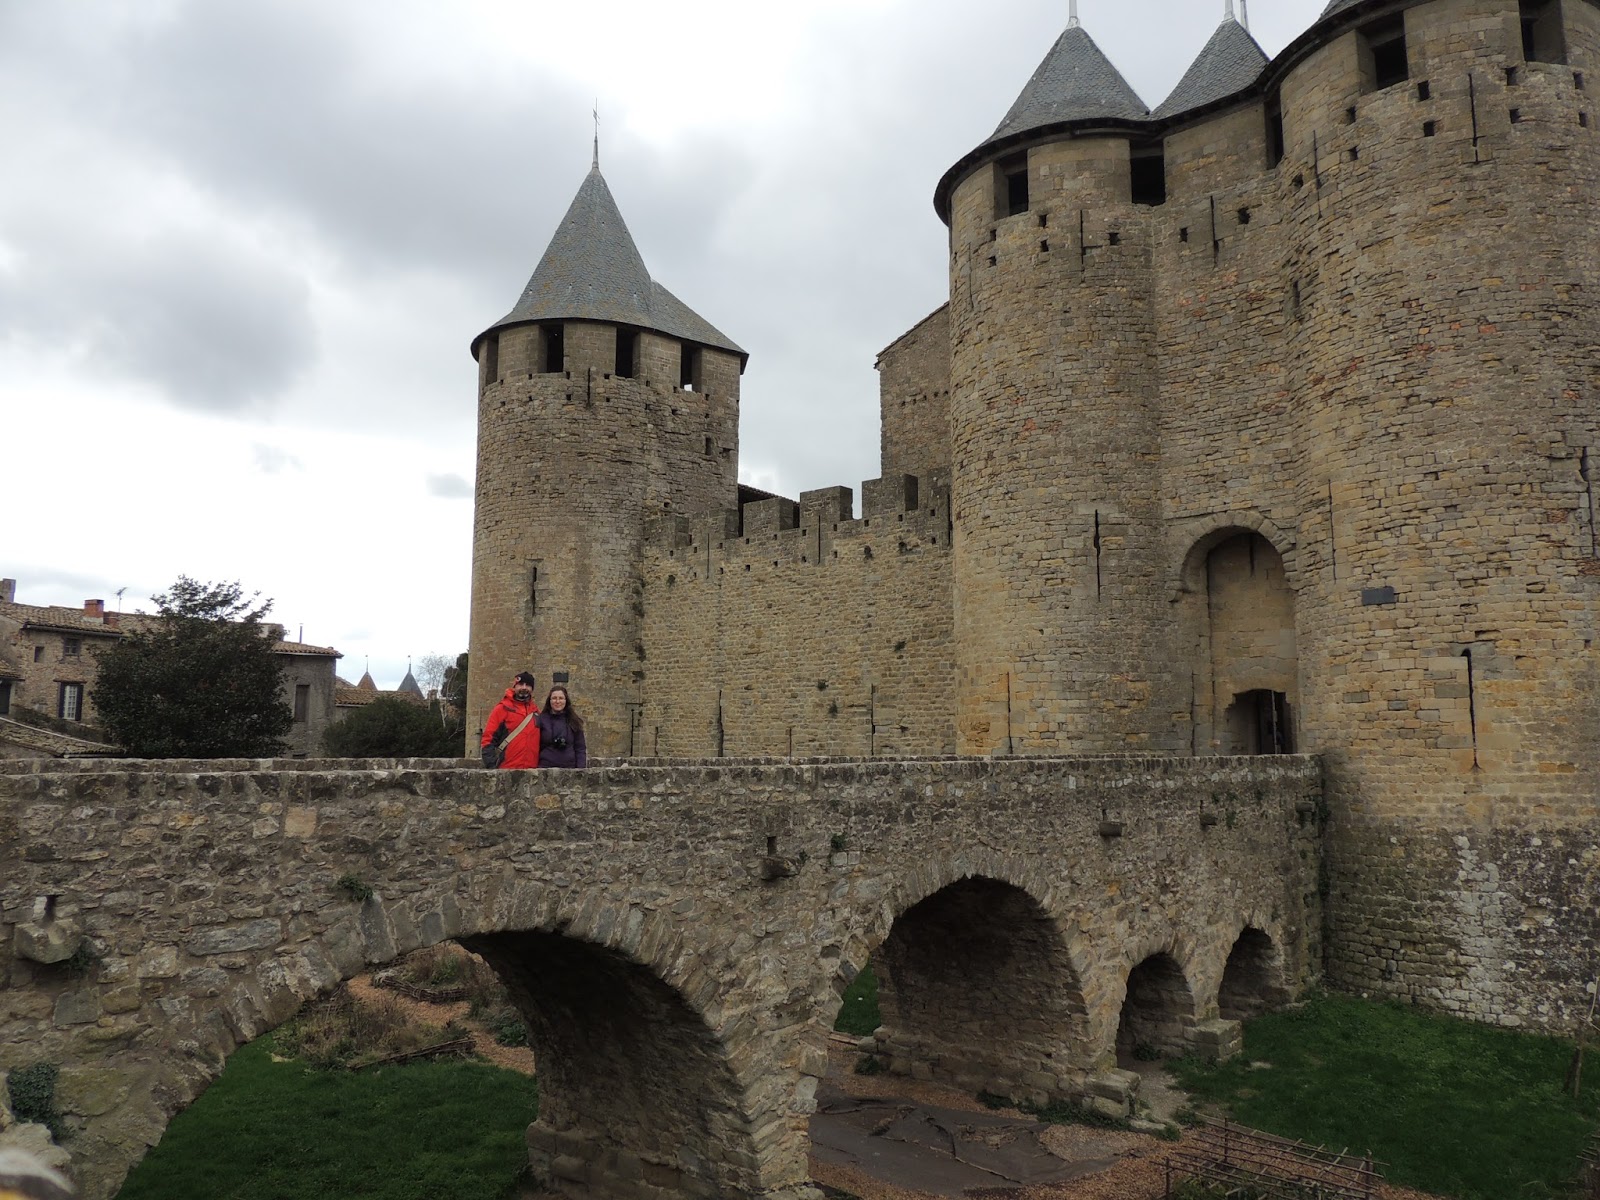 Pueblos y pueblos medievales!! Alucinantes - Blogs de Francia - CARCASSONNE, FRANCIA (1)